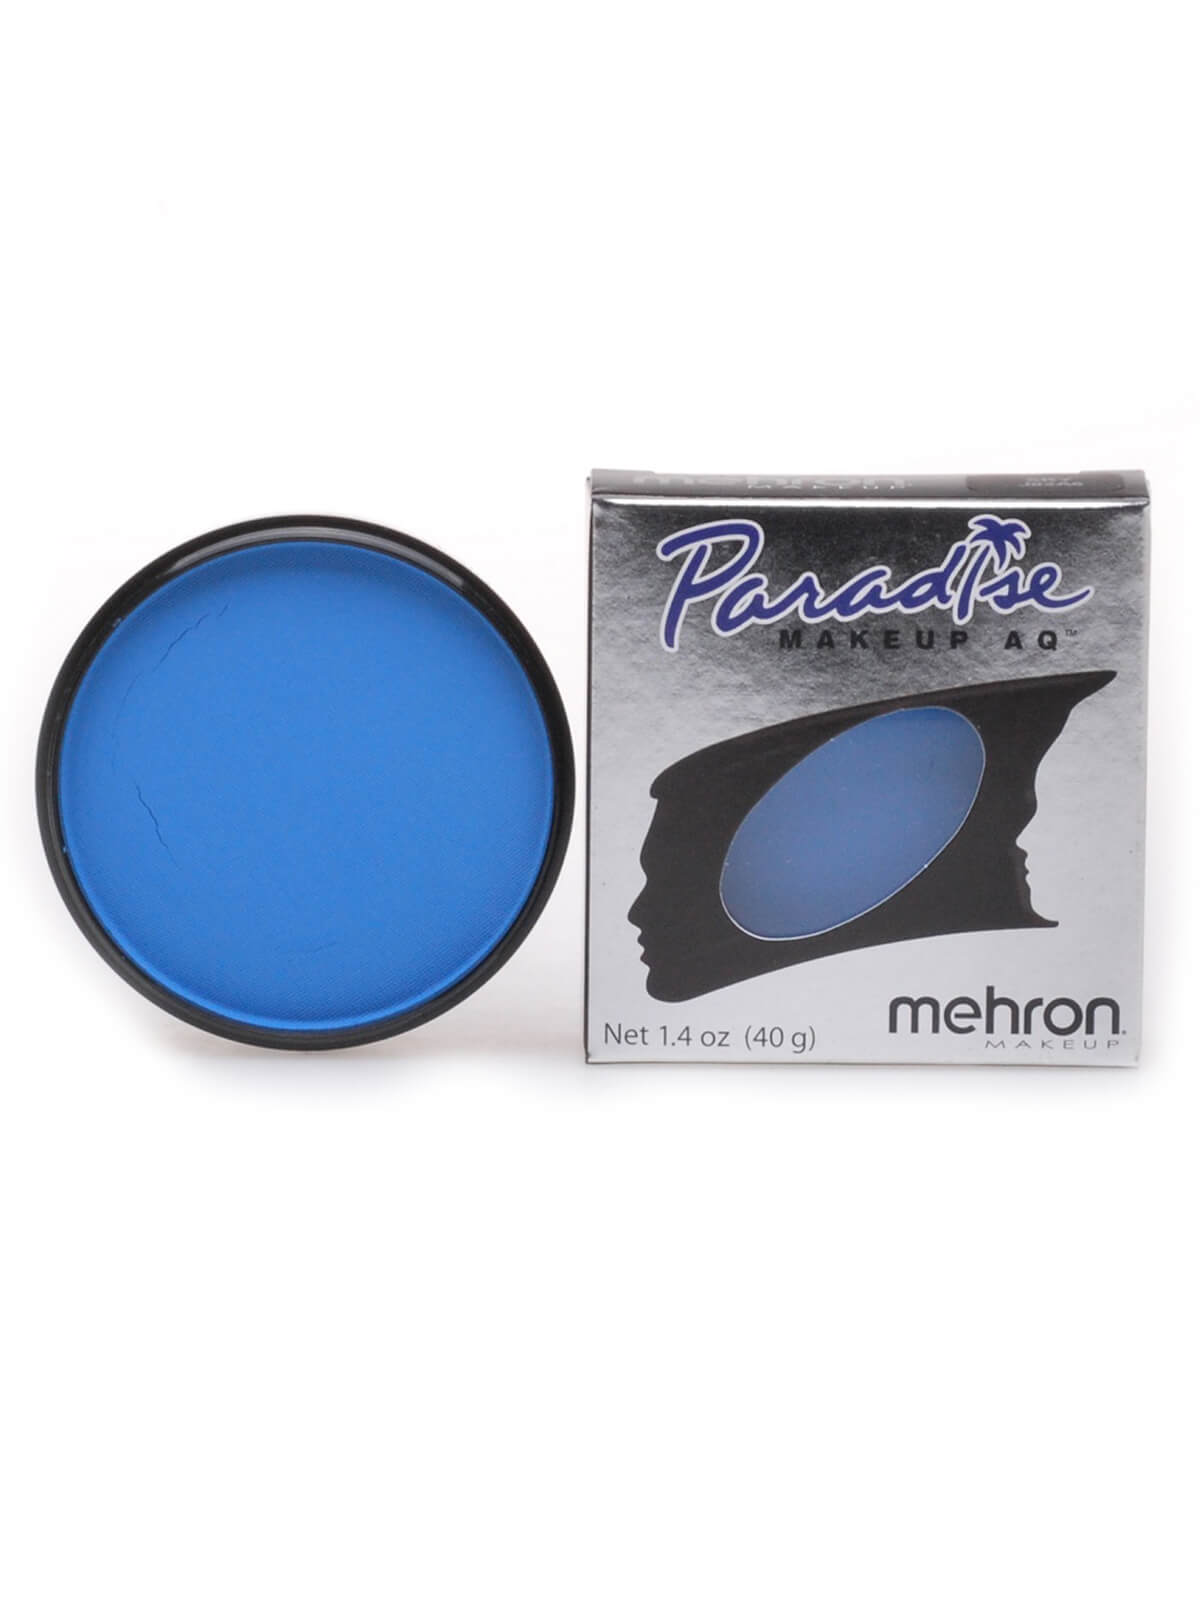 Mehron Paradise Makeup AQ - Nuance - Sky